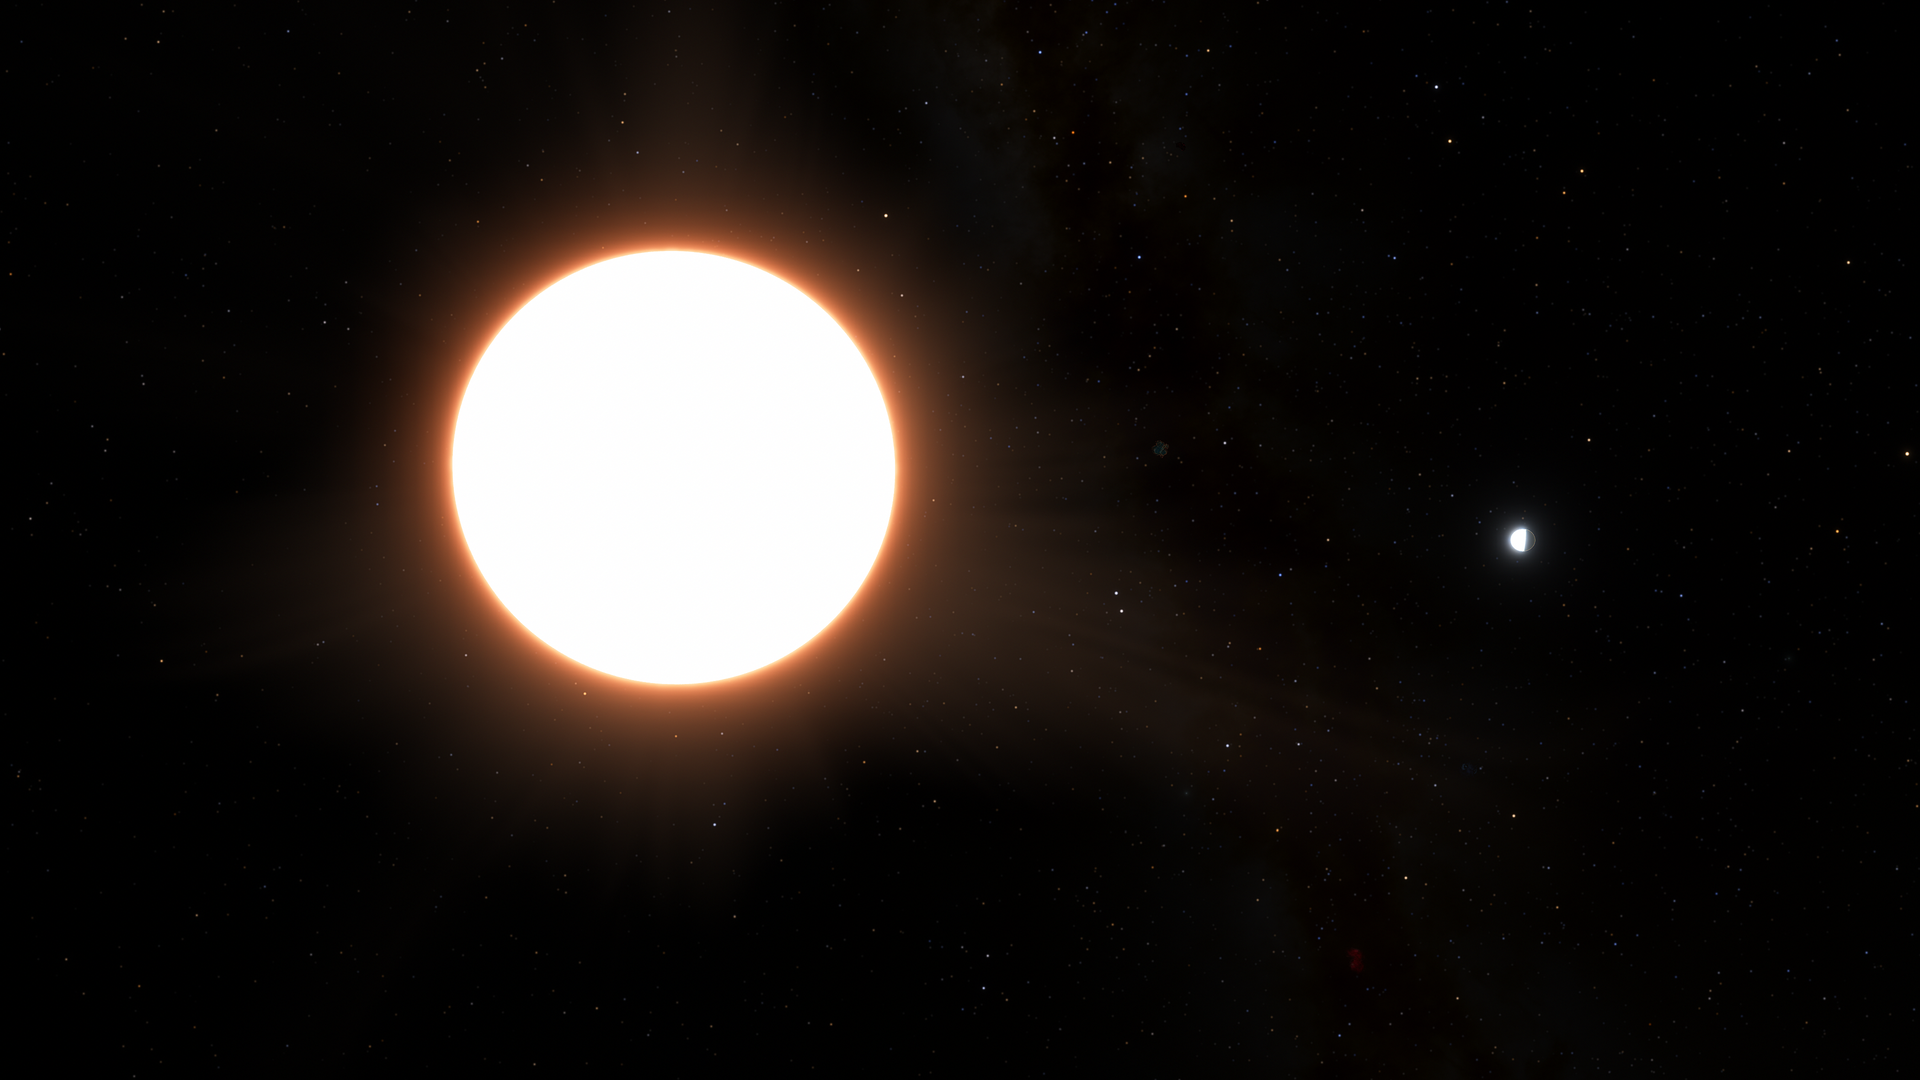 Exoplanet LTT9779 b orbiting its host star